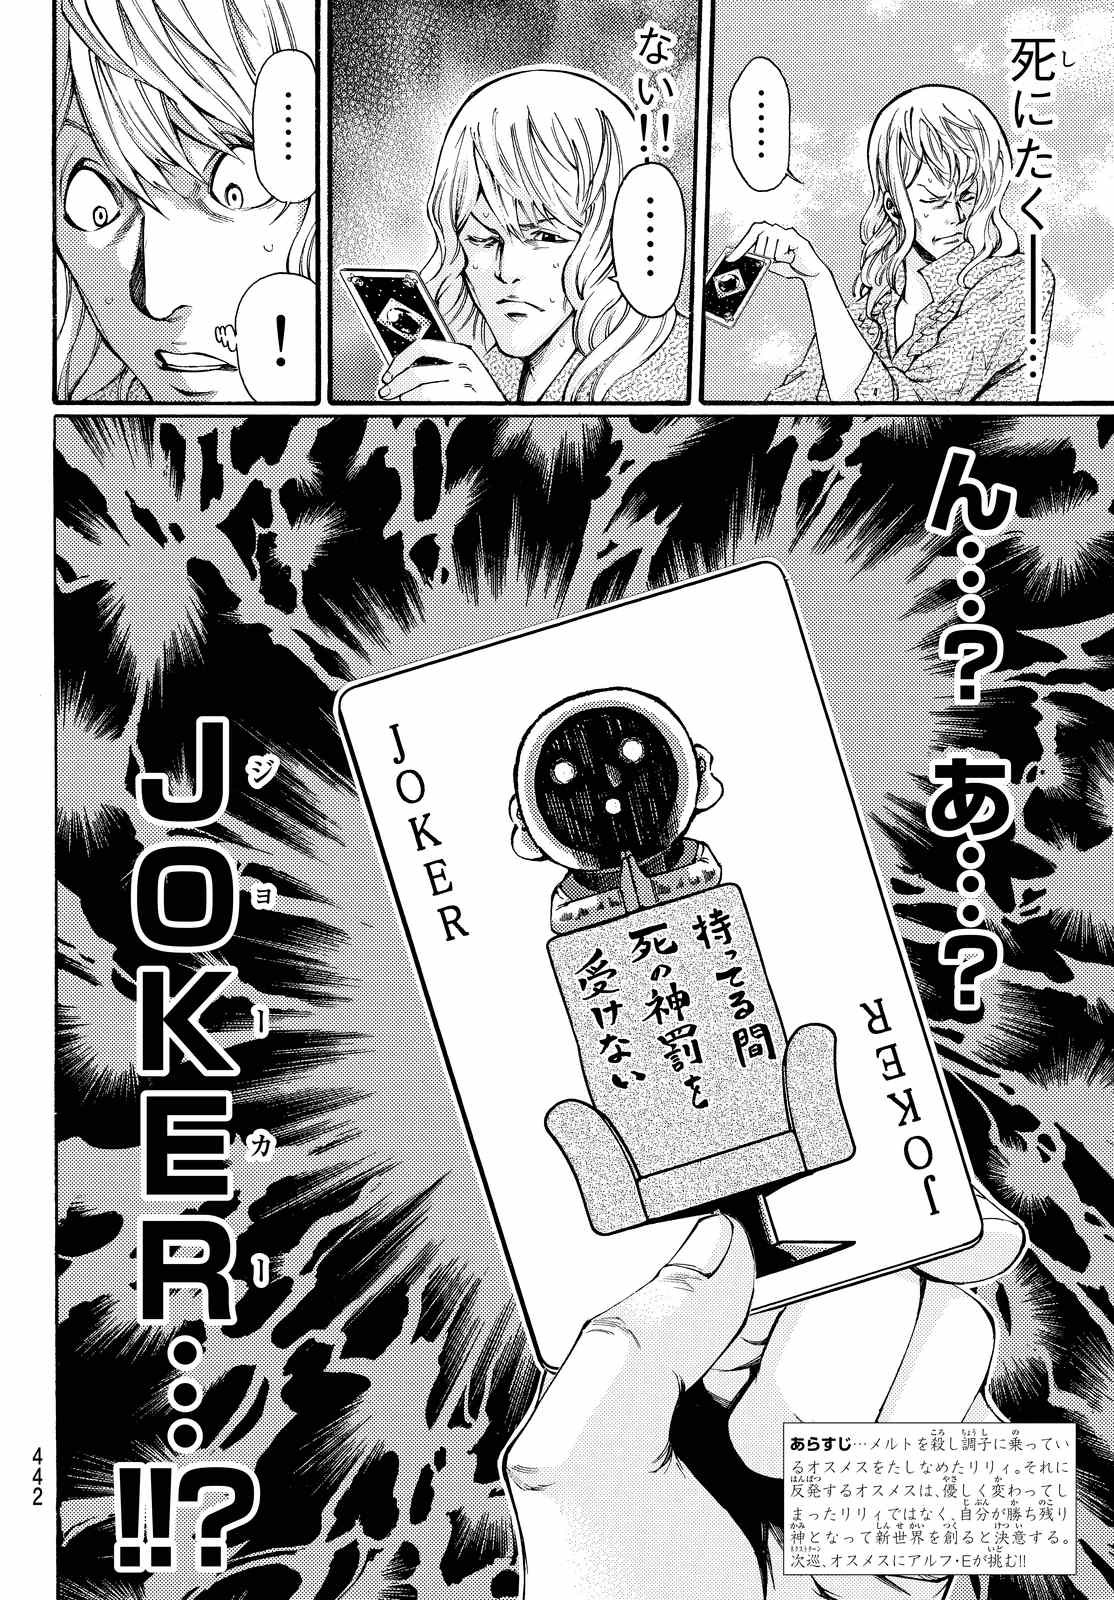 Kamisama no Ituori - Chapter 162 - Page 2